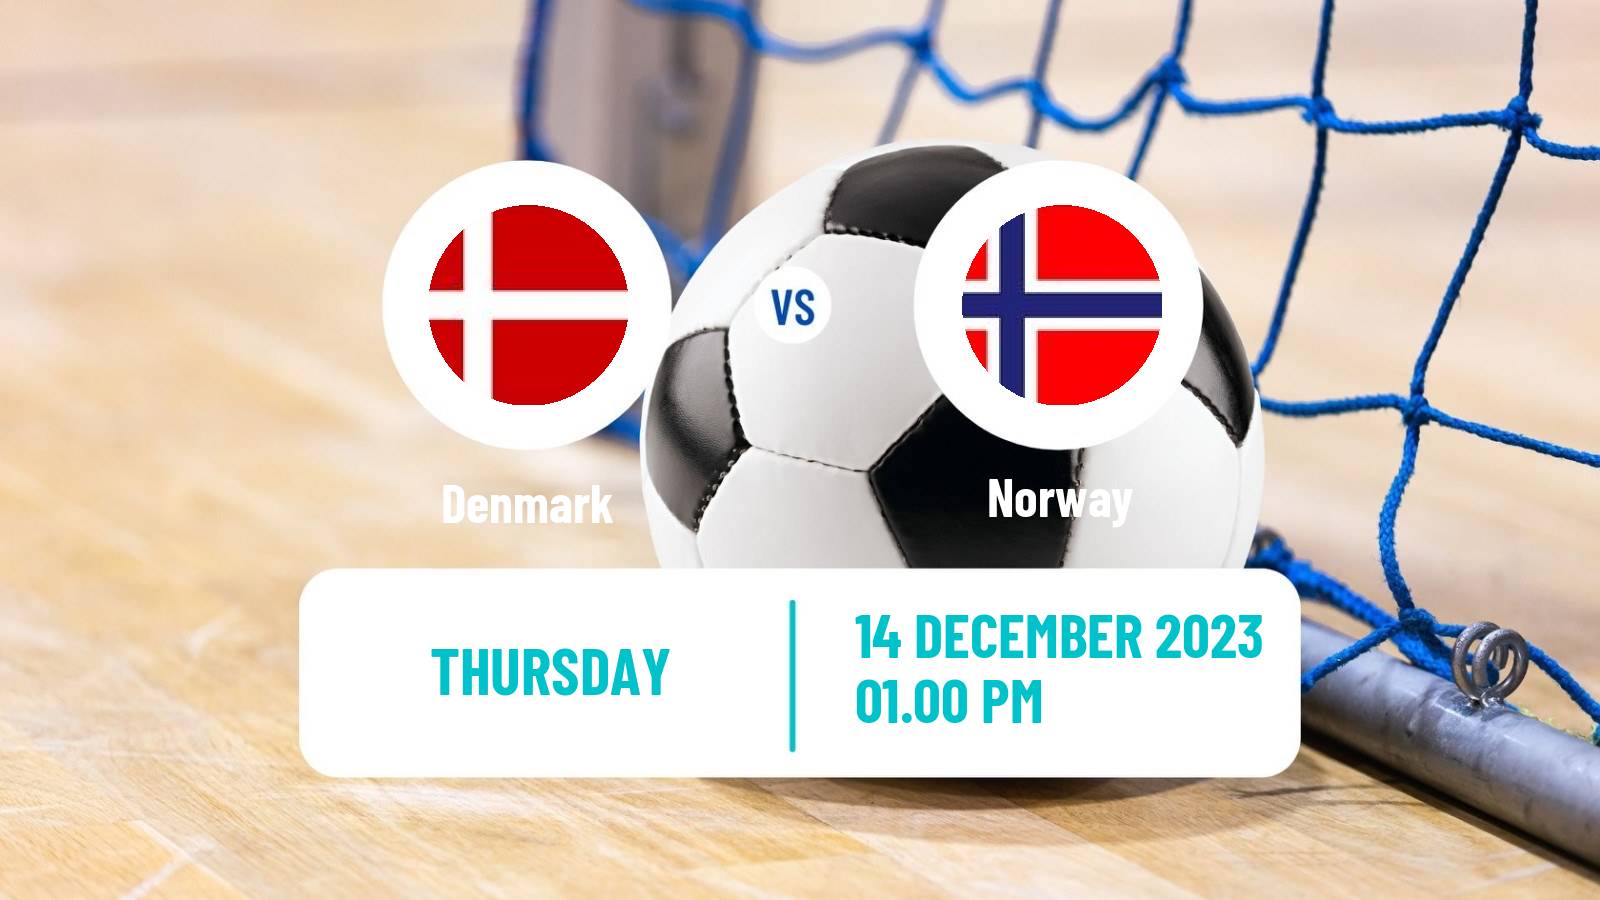 Futsal Friendly International Futsal Denmark - Norway